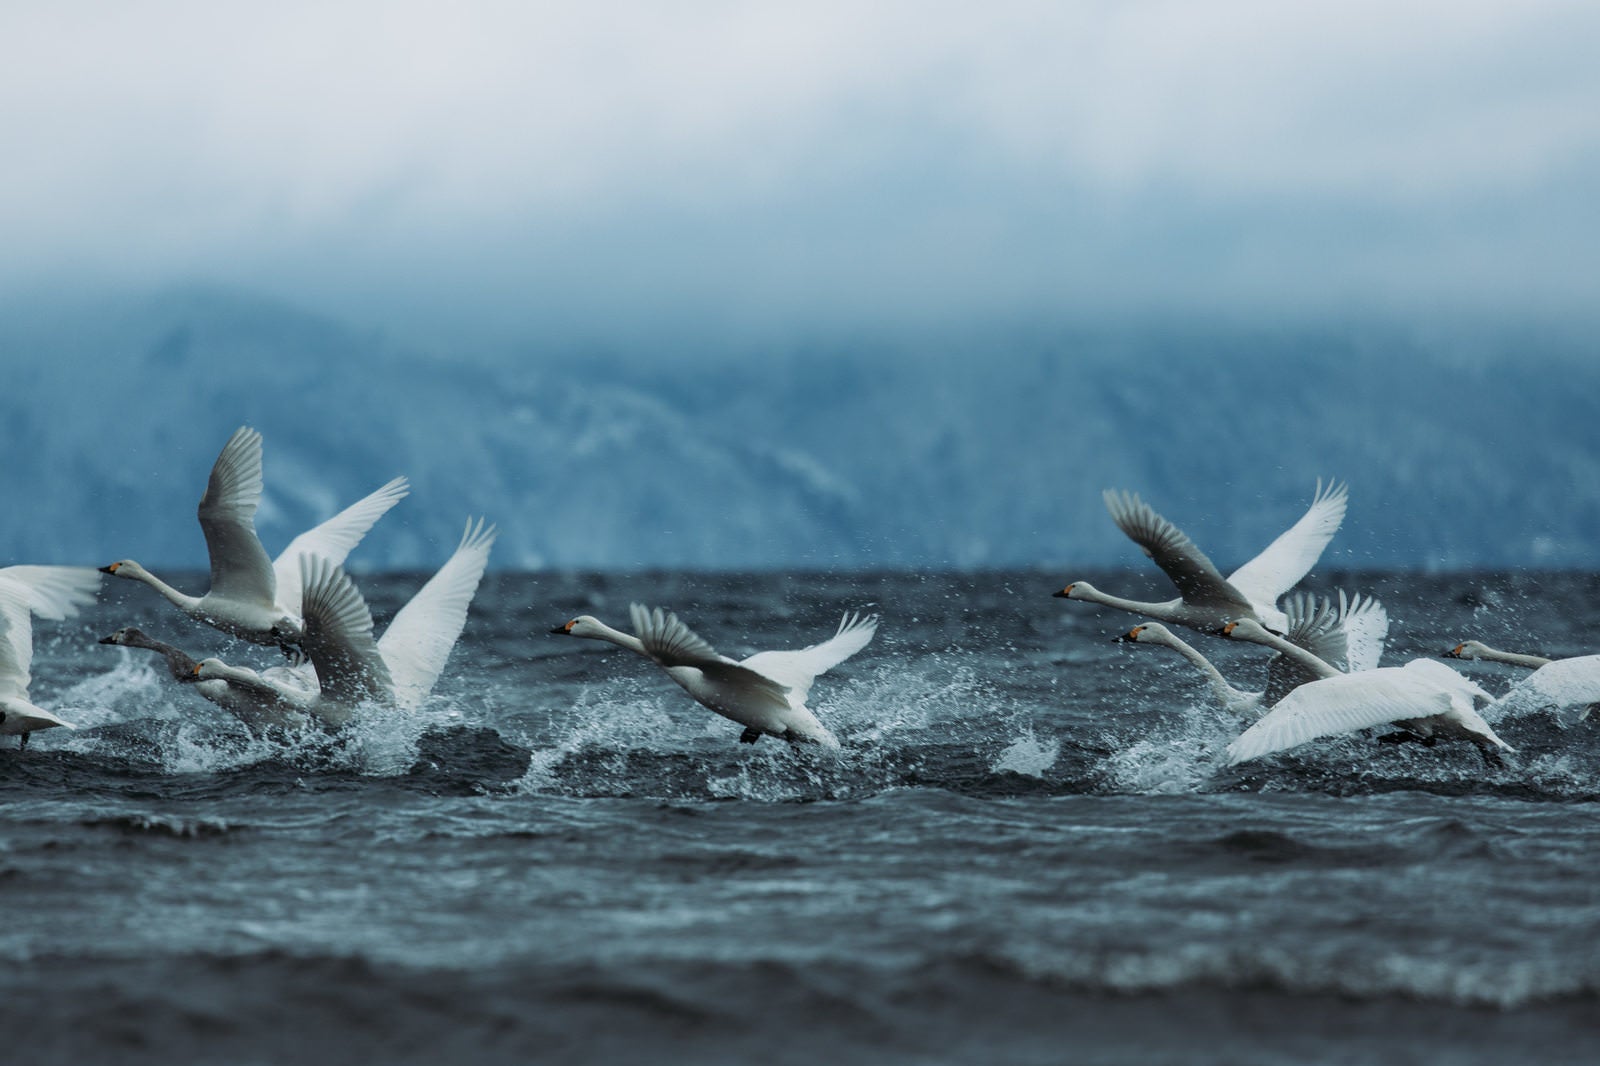 「猪苗代湖で踏み切る白鳥の飛び立ち」の写真